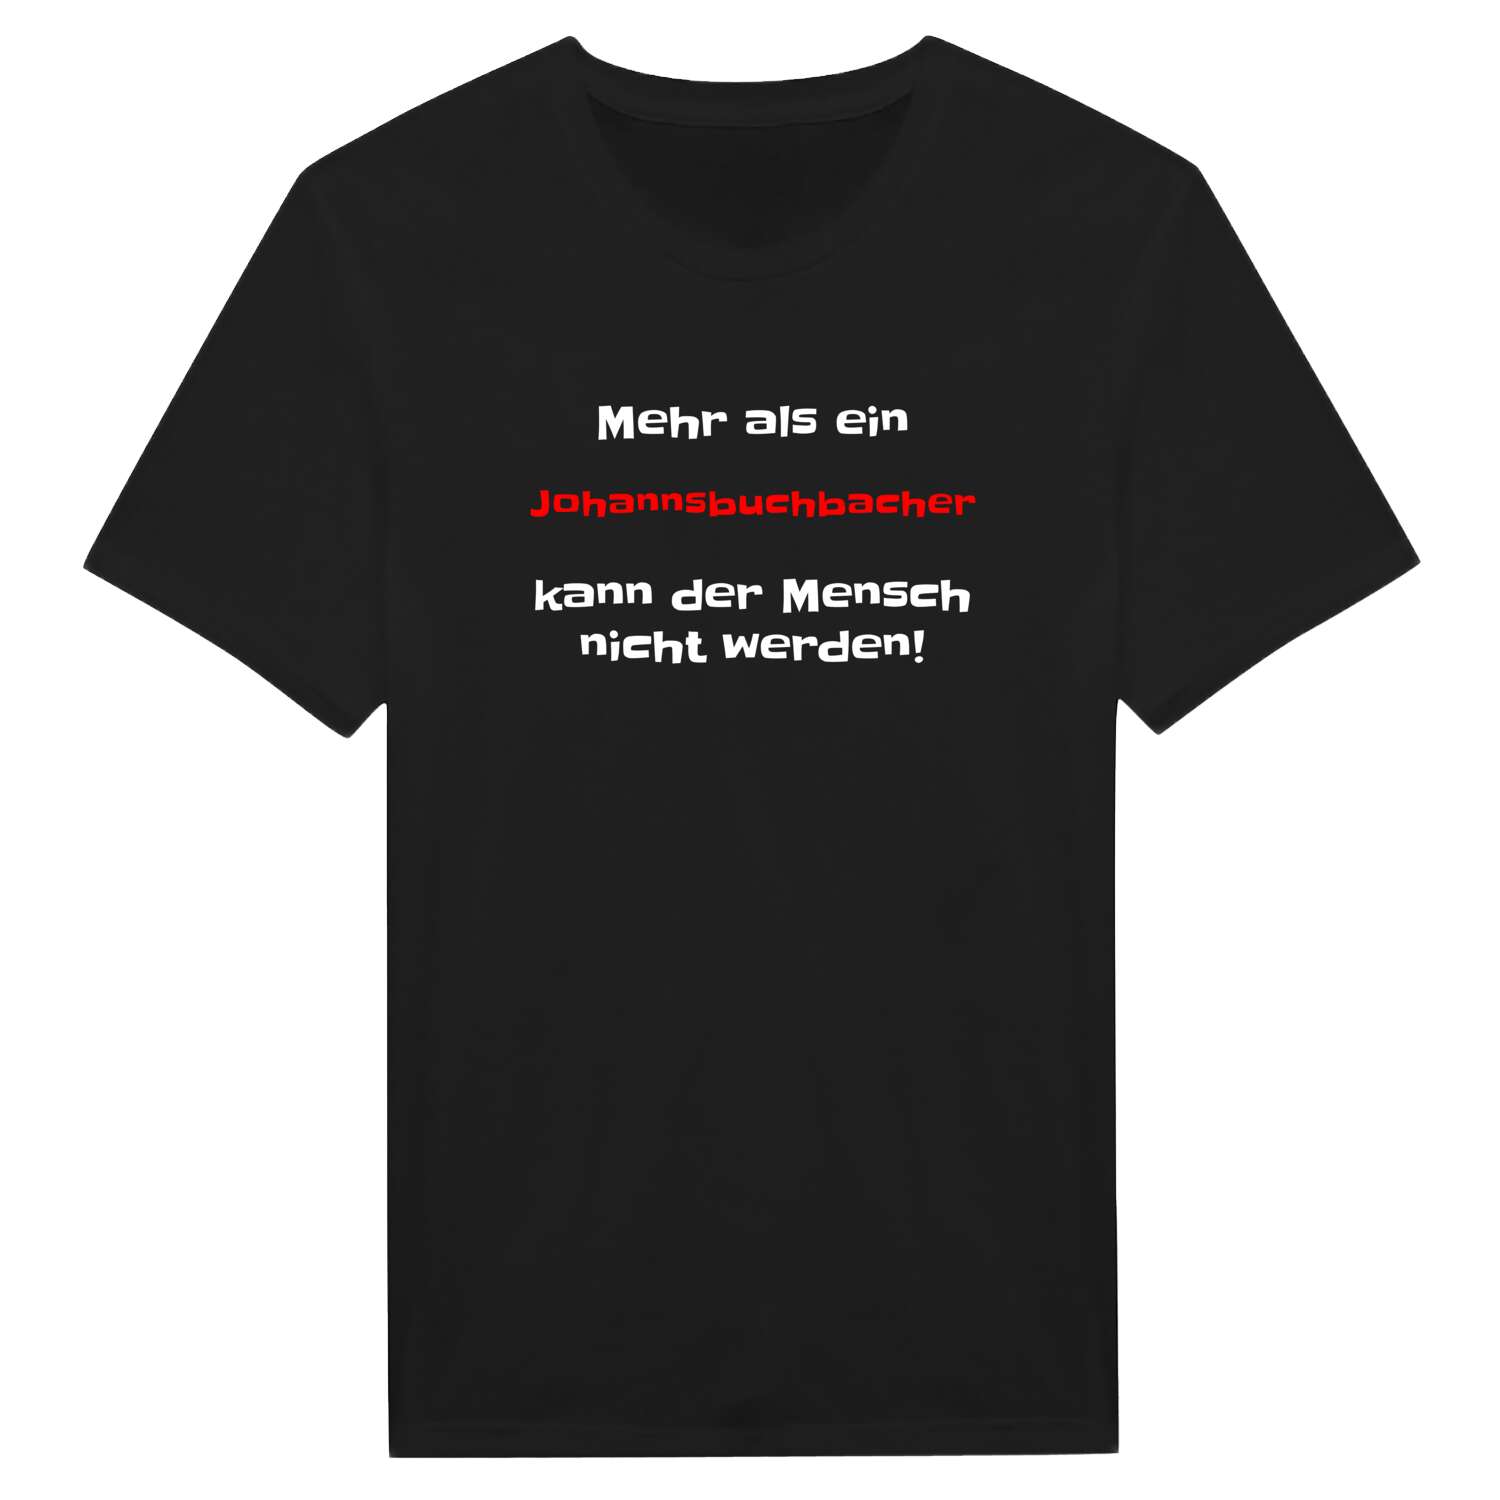 Johannsbuchbach T-Shirt »Mehr als ein«